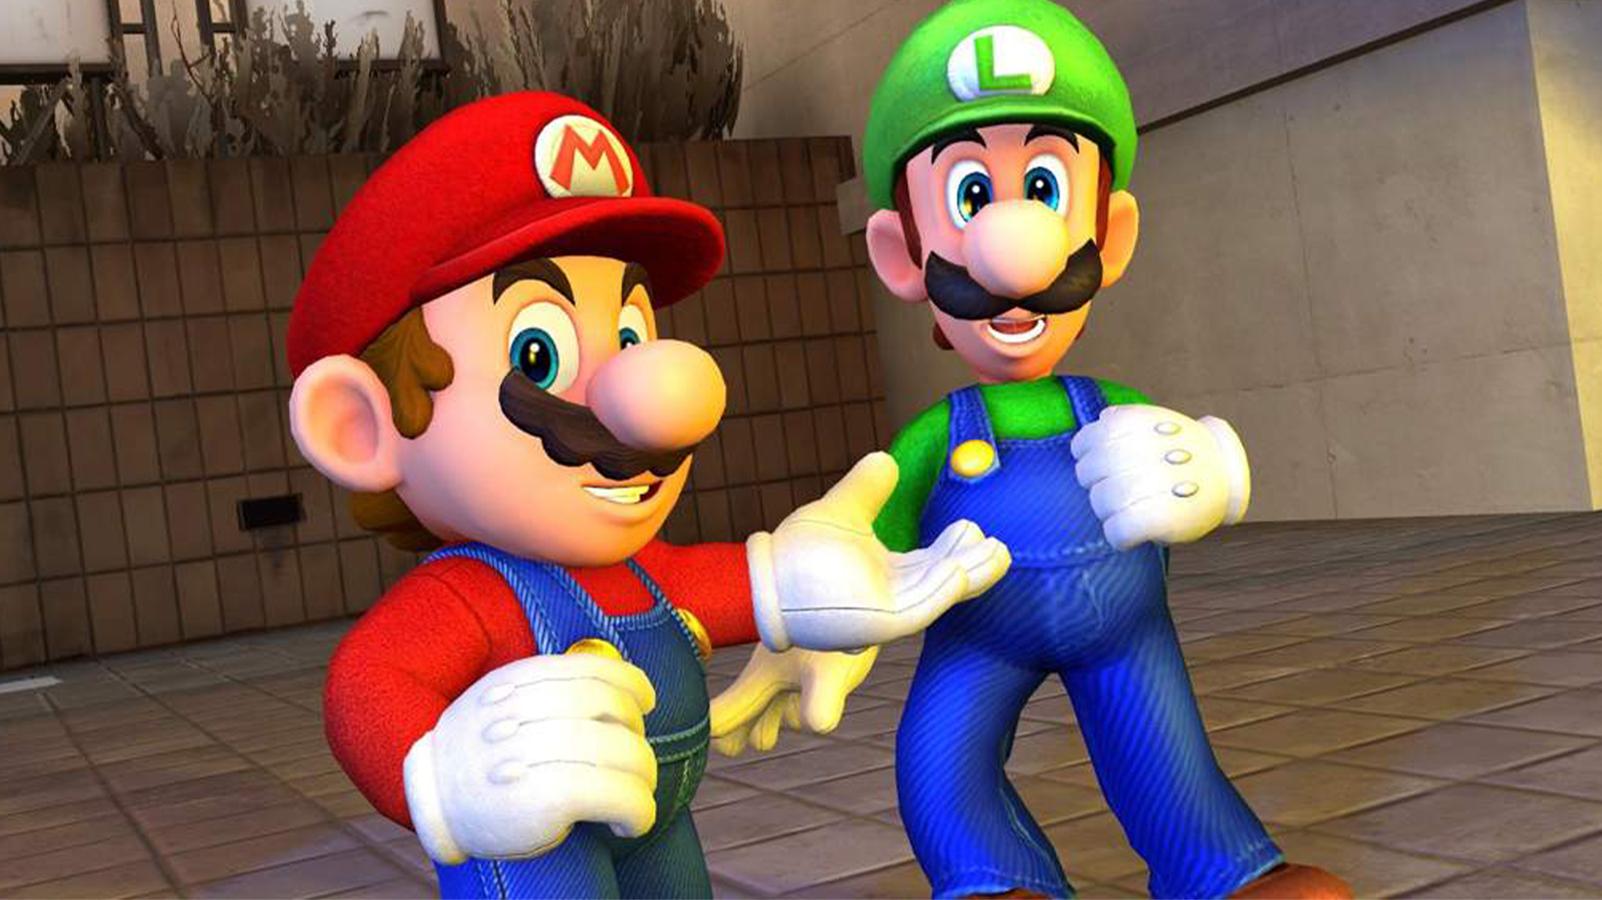 Mario and Luigi on Garry's Mod